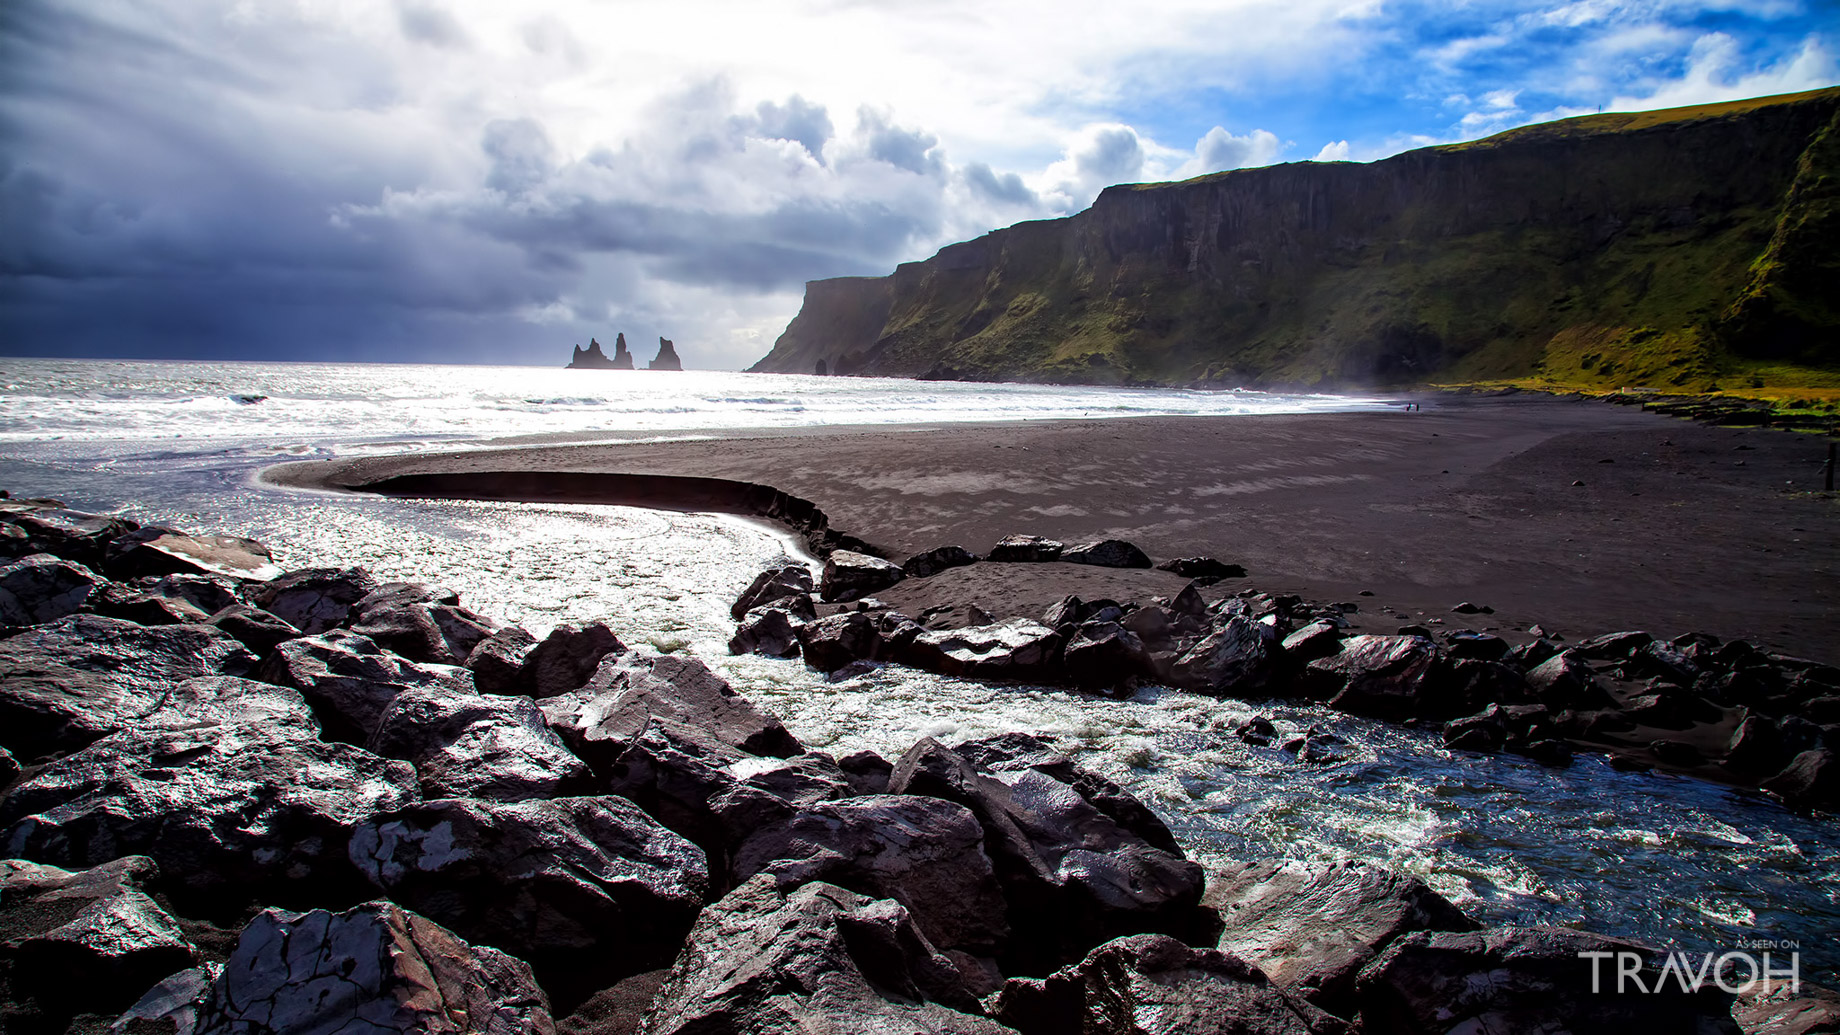 Exploring Vík í Mýrdal, Iceland - A Subpolar Oceanic Destination of Wondrous Coastal Beauty